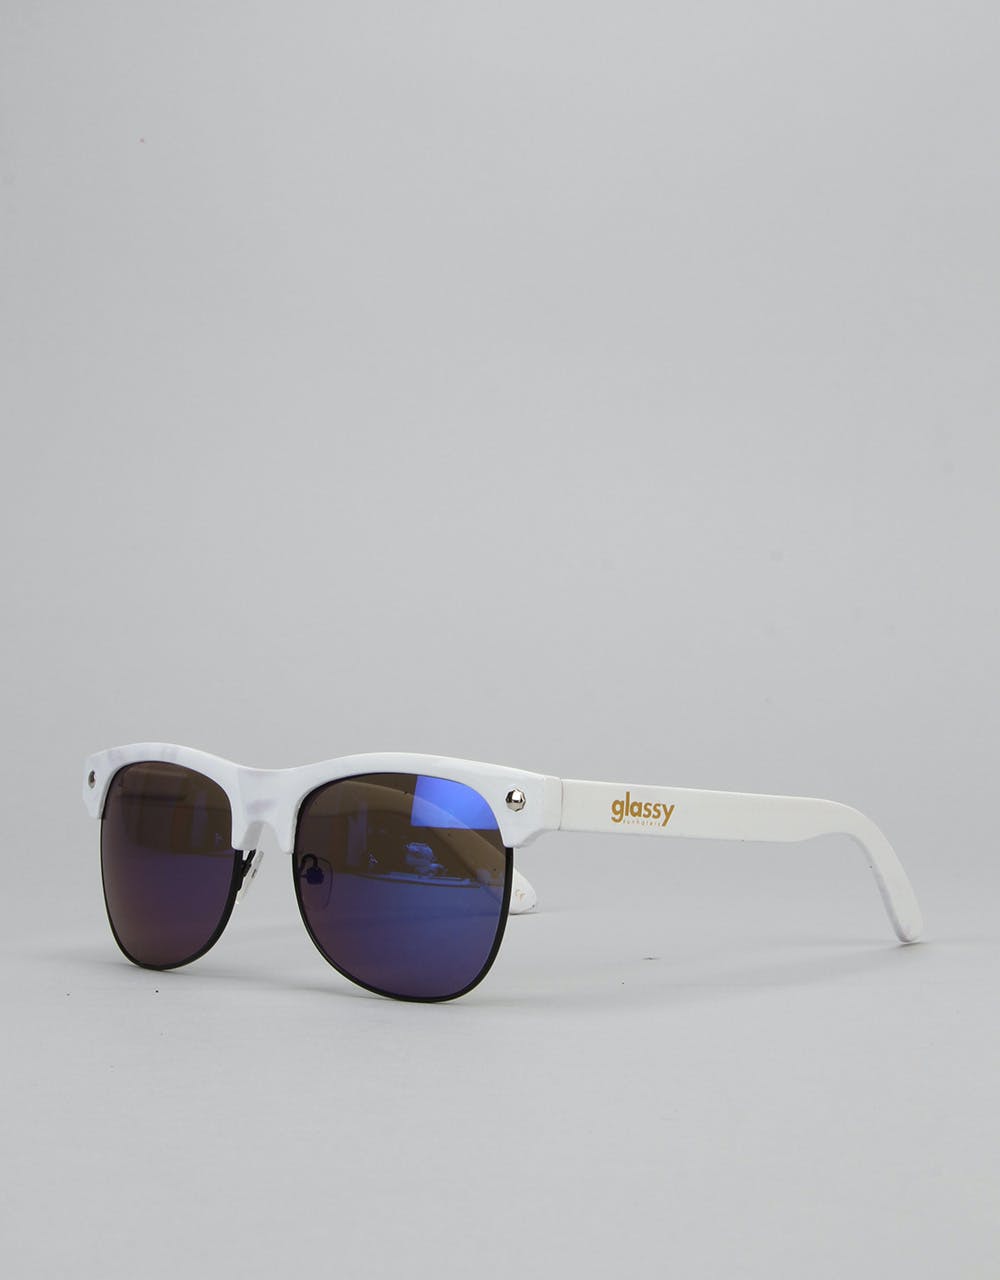 Glassy Sunhater Shredder Sunglasses - White/Blue Mirror